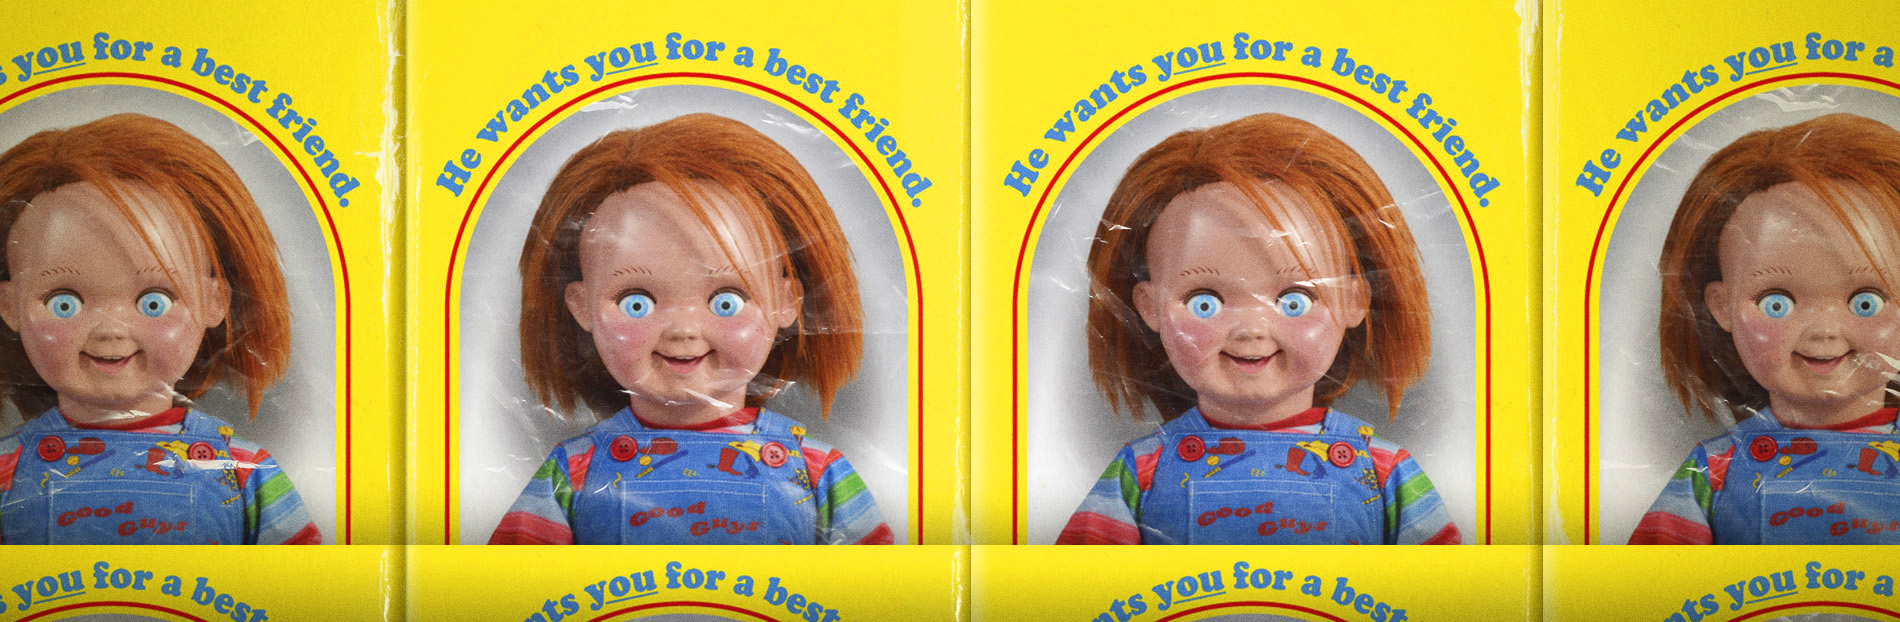 10 bonecos macabros que você não quer na sua casa 